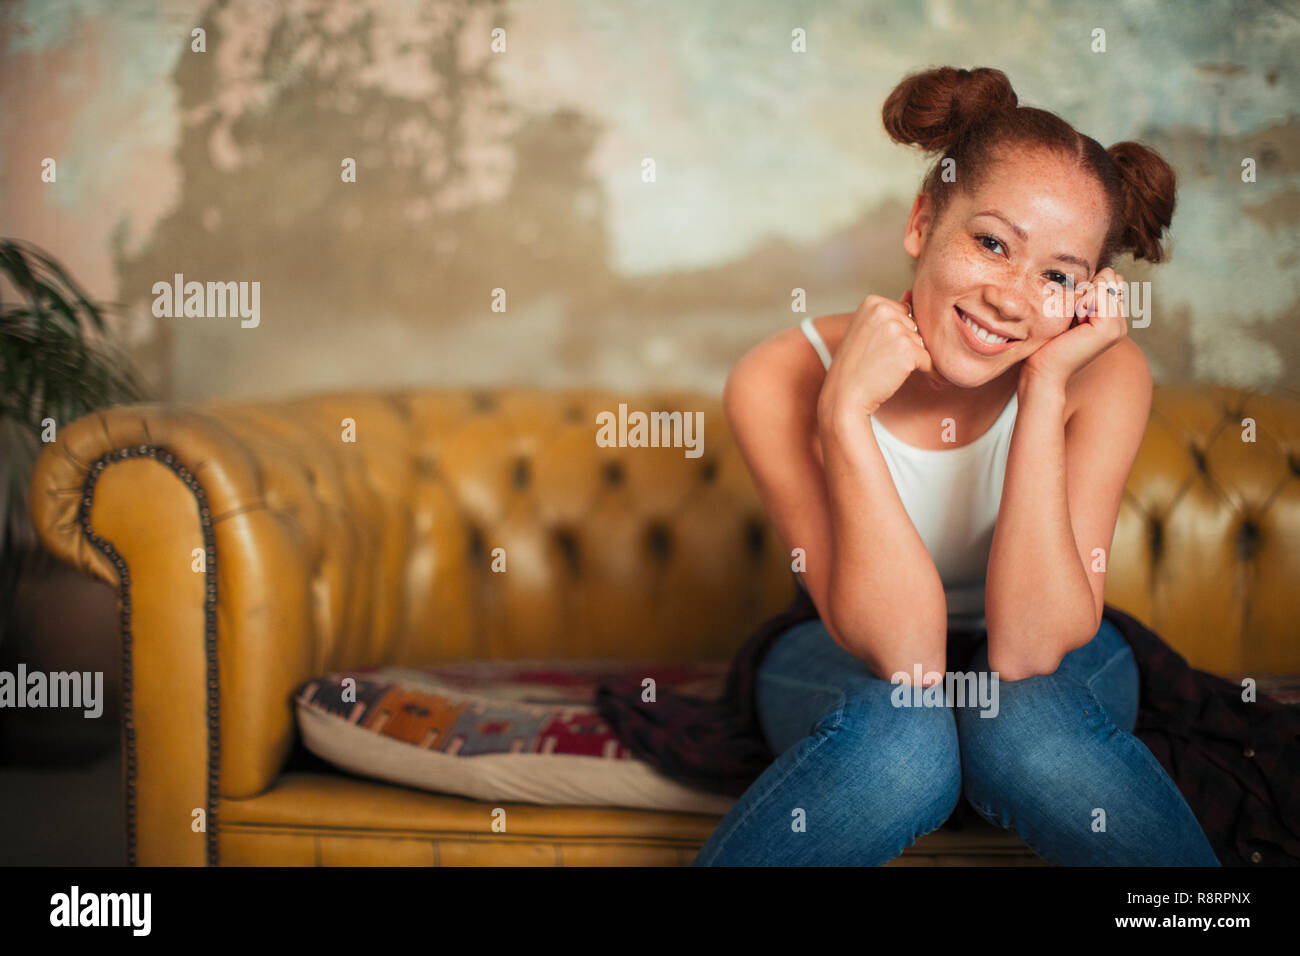 Portrait souriant, confiant young woman sitting on sofa Banque D'Images